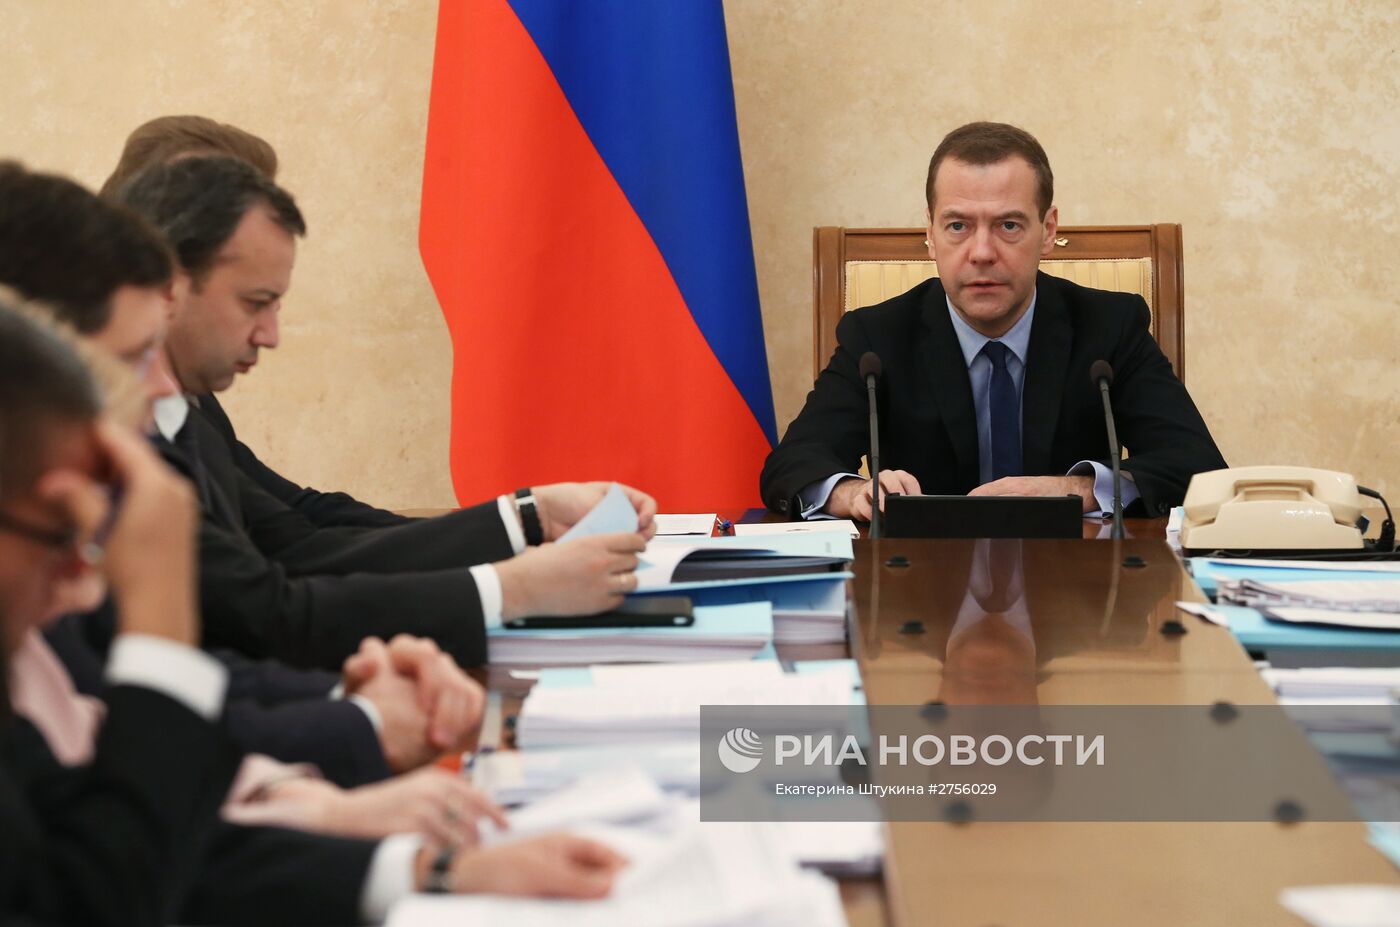 Премьер-министр РФ Д.Медведев провел заседание Правительственной комиссии по контролю за осуществлением иностранных инвестиций в РФ